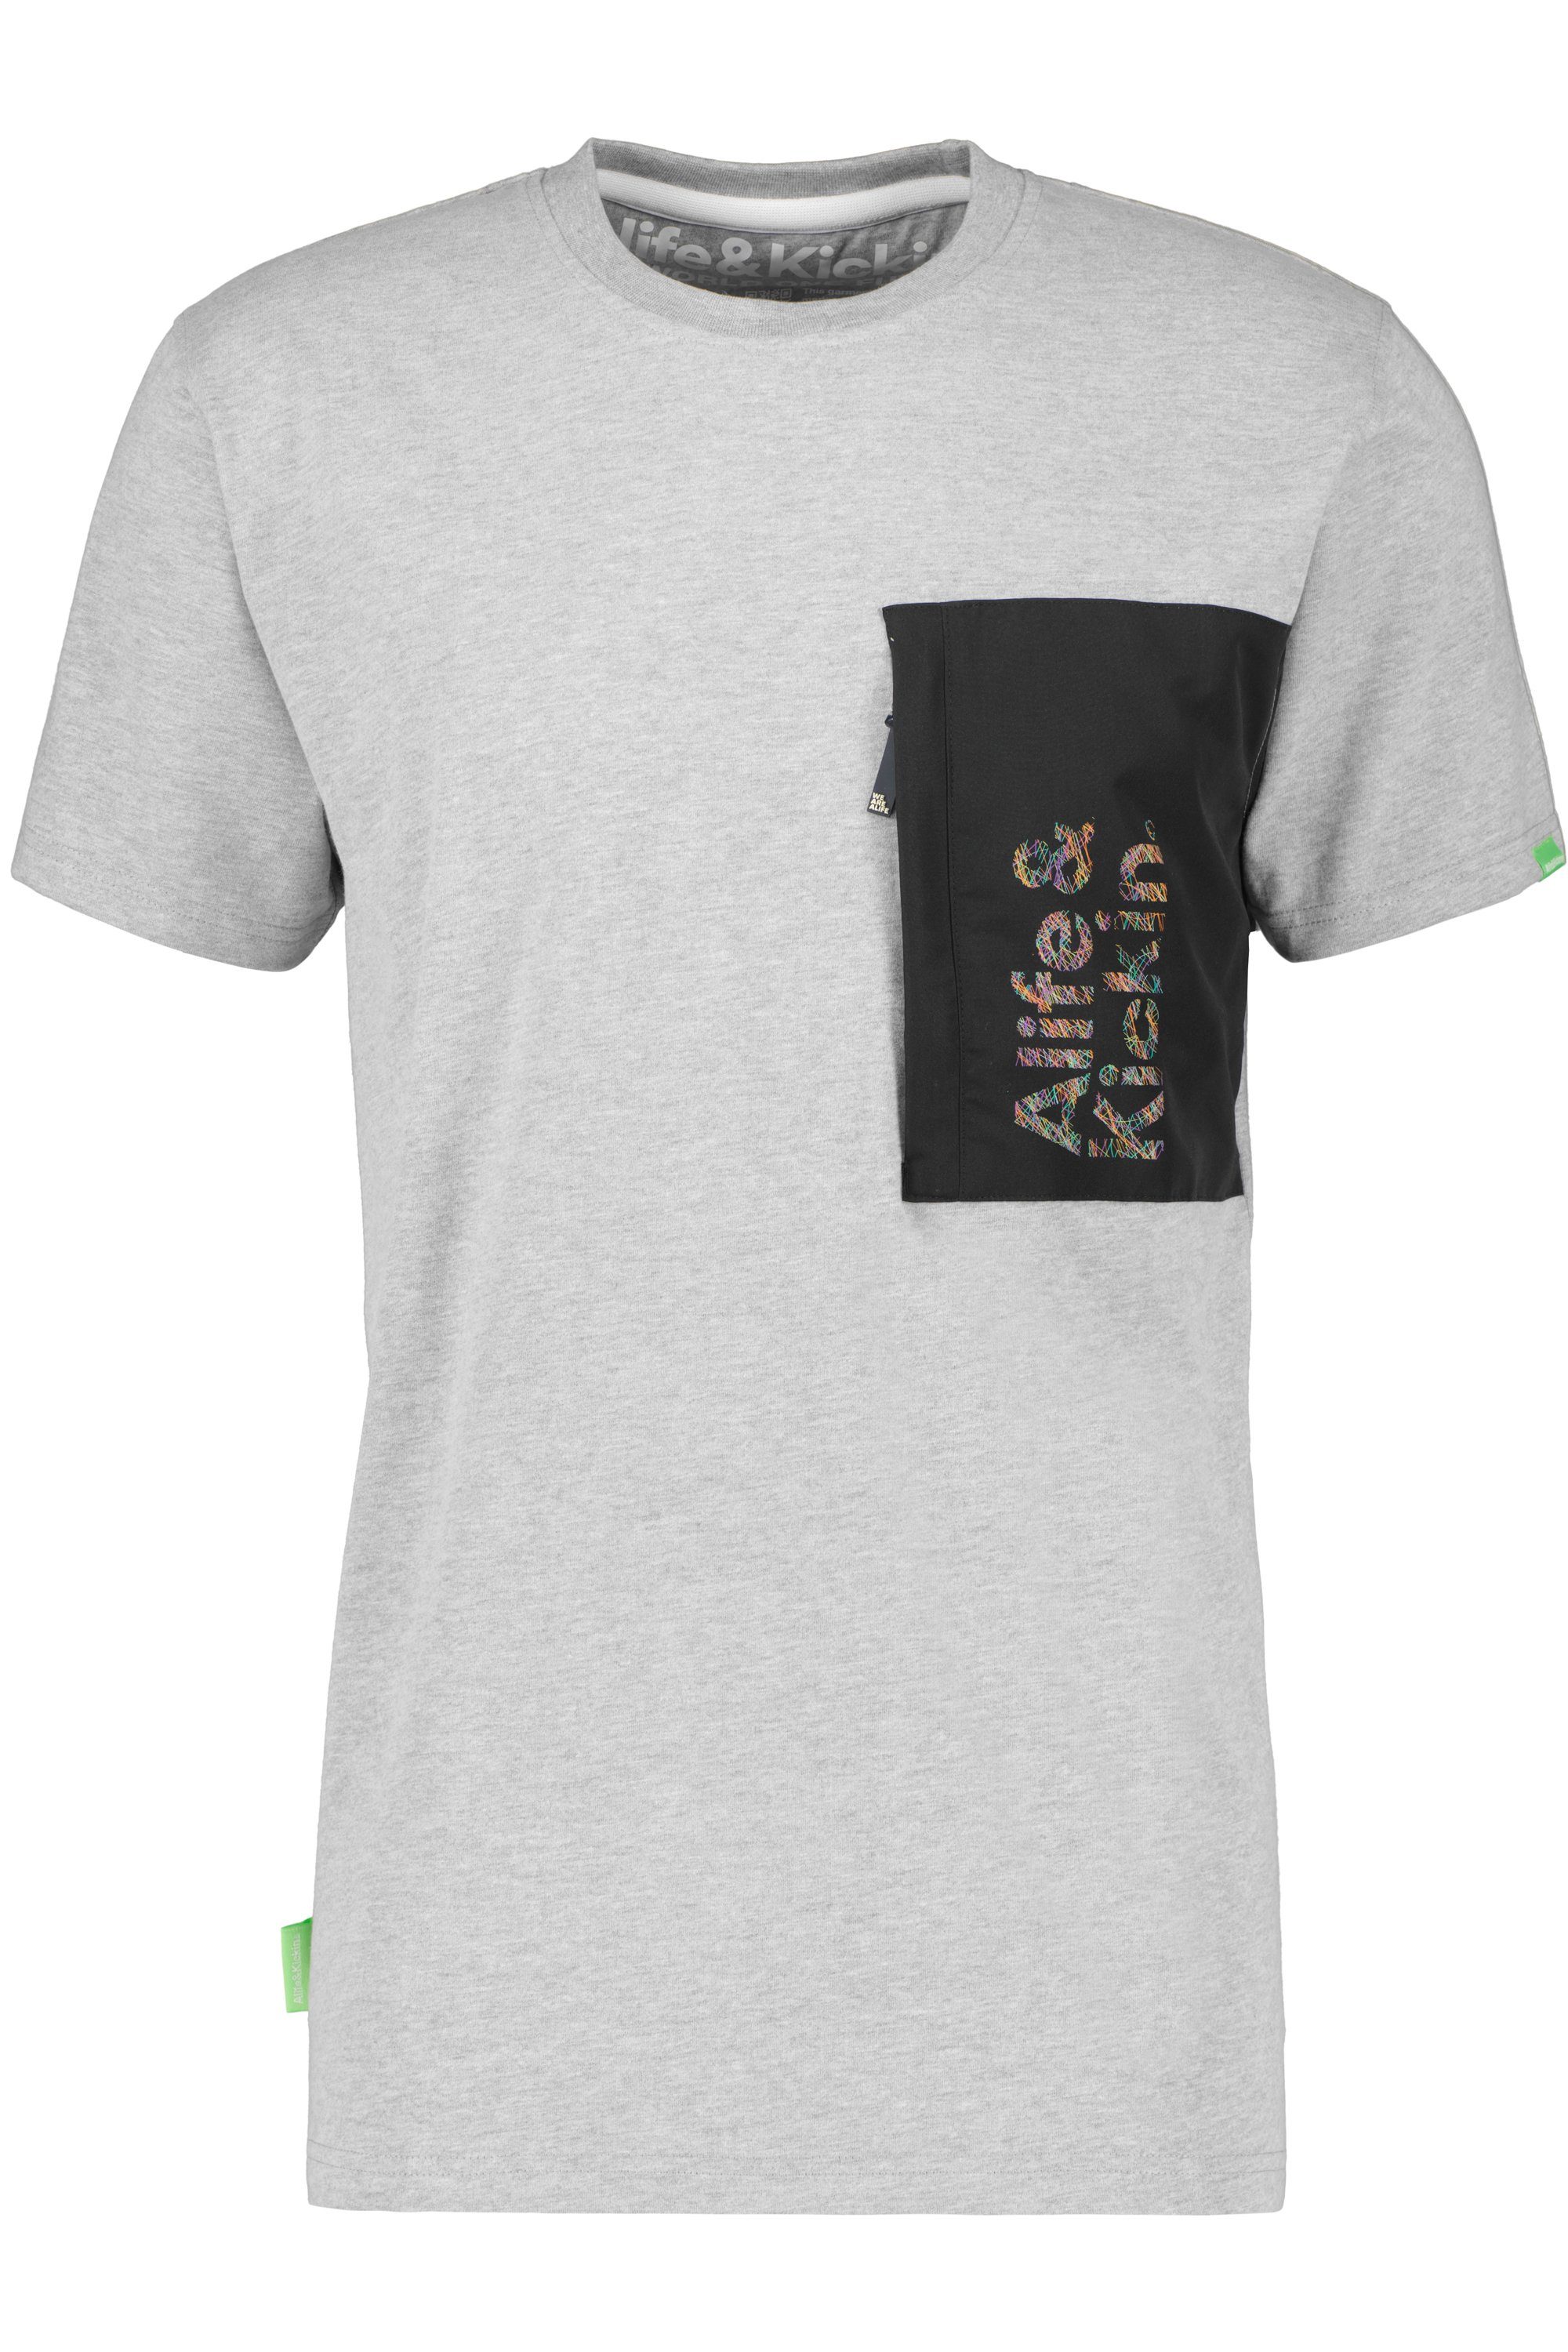 Alife & Kickin T-Shirt Herren T-Shirt RossAK steal Shirt